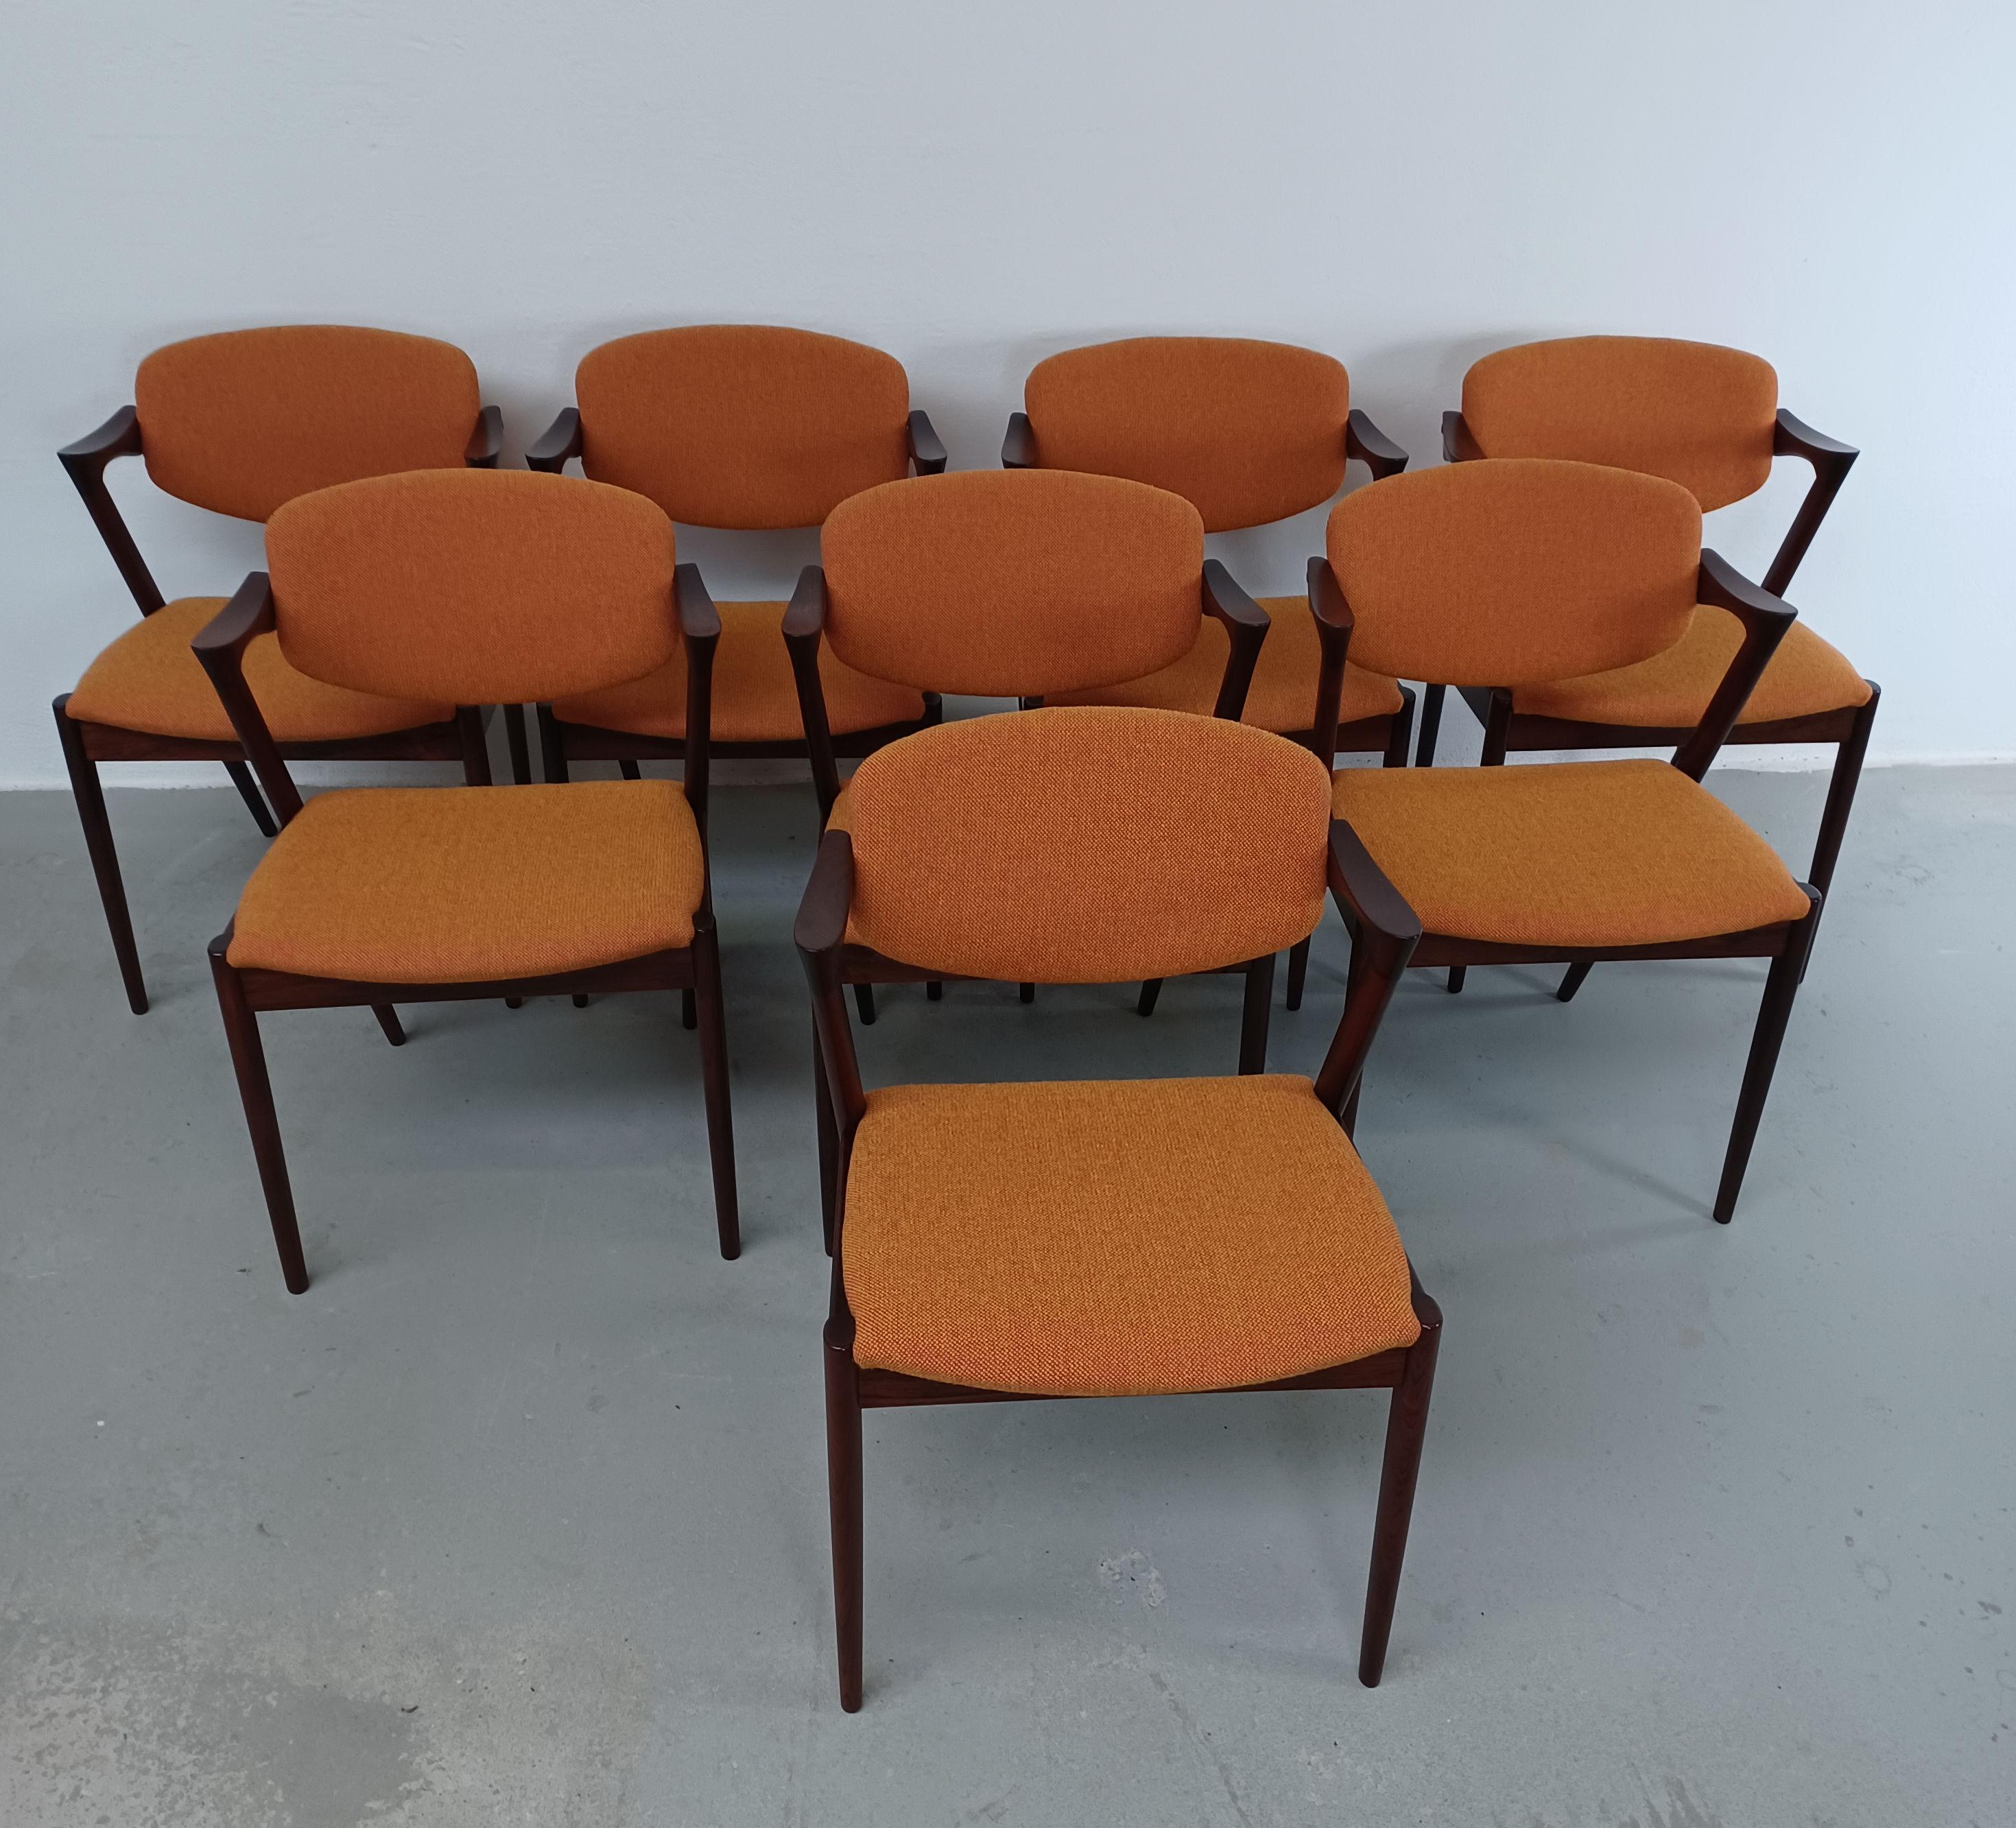 Satz von acht vollständig restaurierten Esszimmerstühlen aus Palisanderholz aus den 1960er Jahren von Kai Kristiansen für die Schous Møbelfabrik mit maßgefertigter Polsterung.

Die Stühle haben Kai Kristiansens typisches leichtes und elegantes